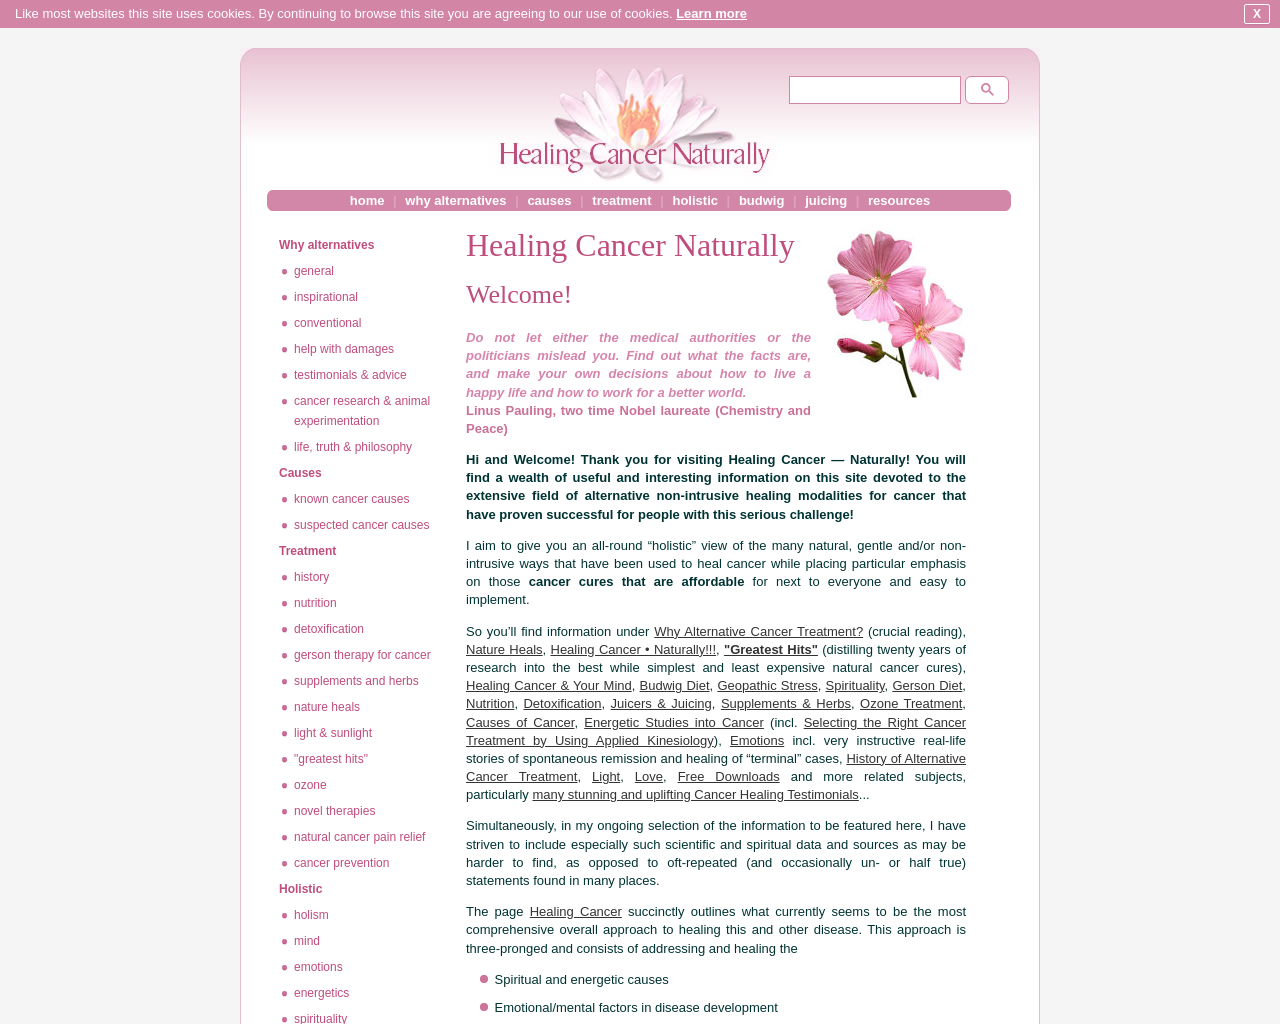 healingcancernaturally.com